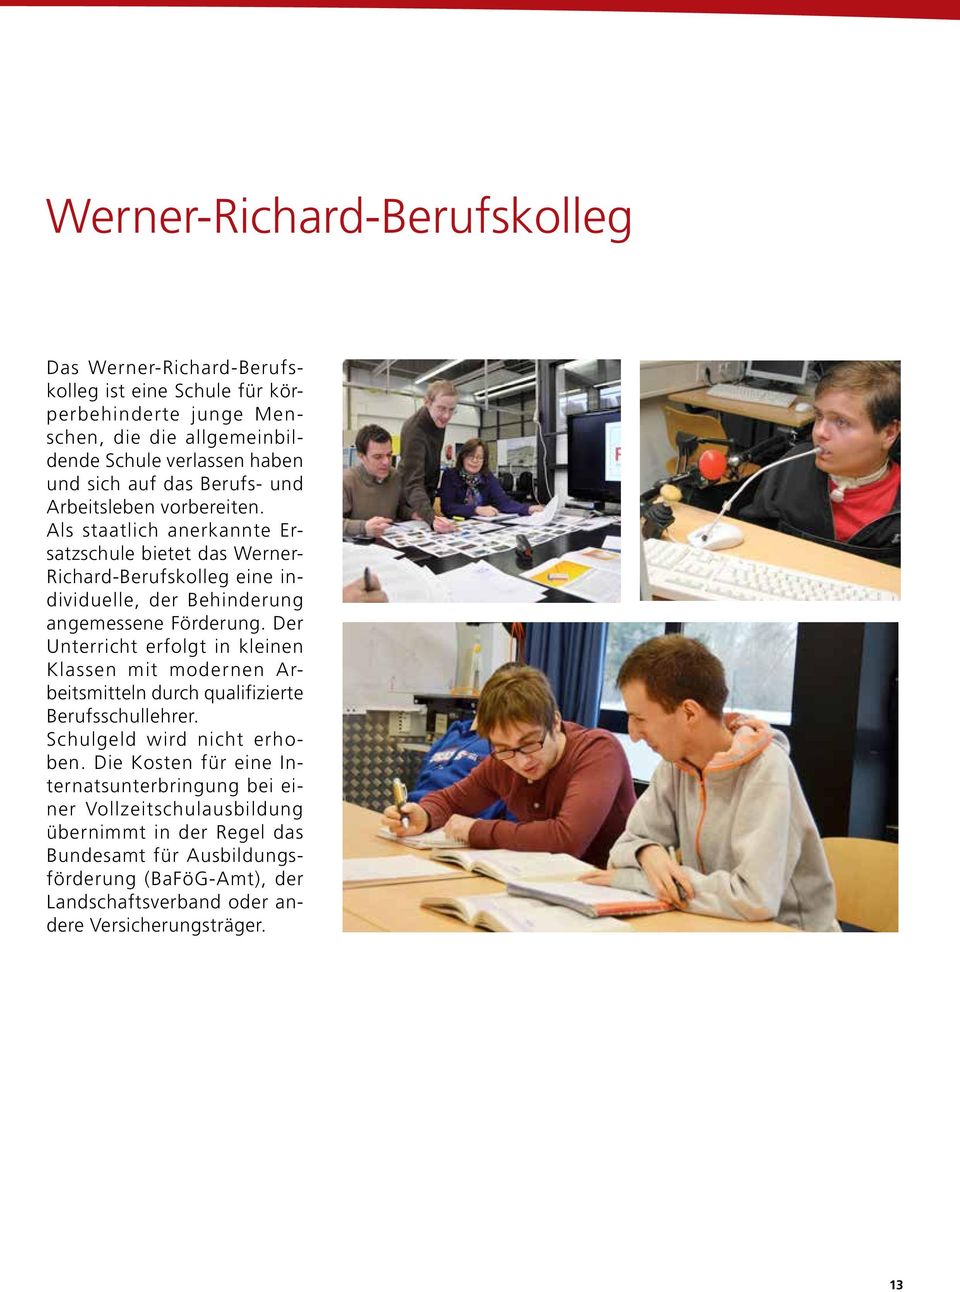 Als staatlich anerkannte Ersatzschule bietet das Werner- Richard-Berufskolleg eine individuelle, der Behinderung angemessene Förderung.